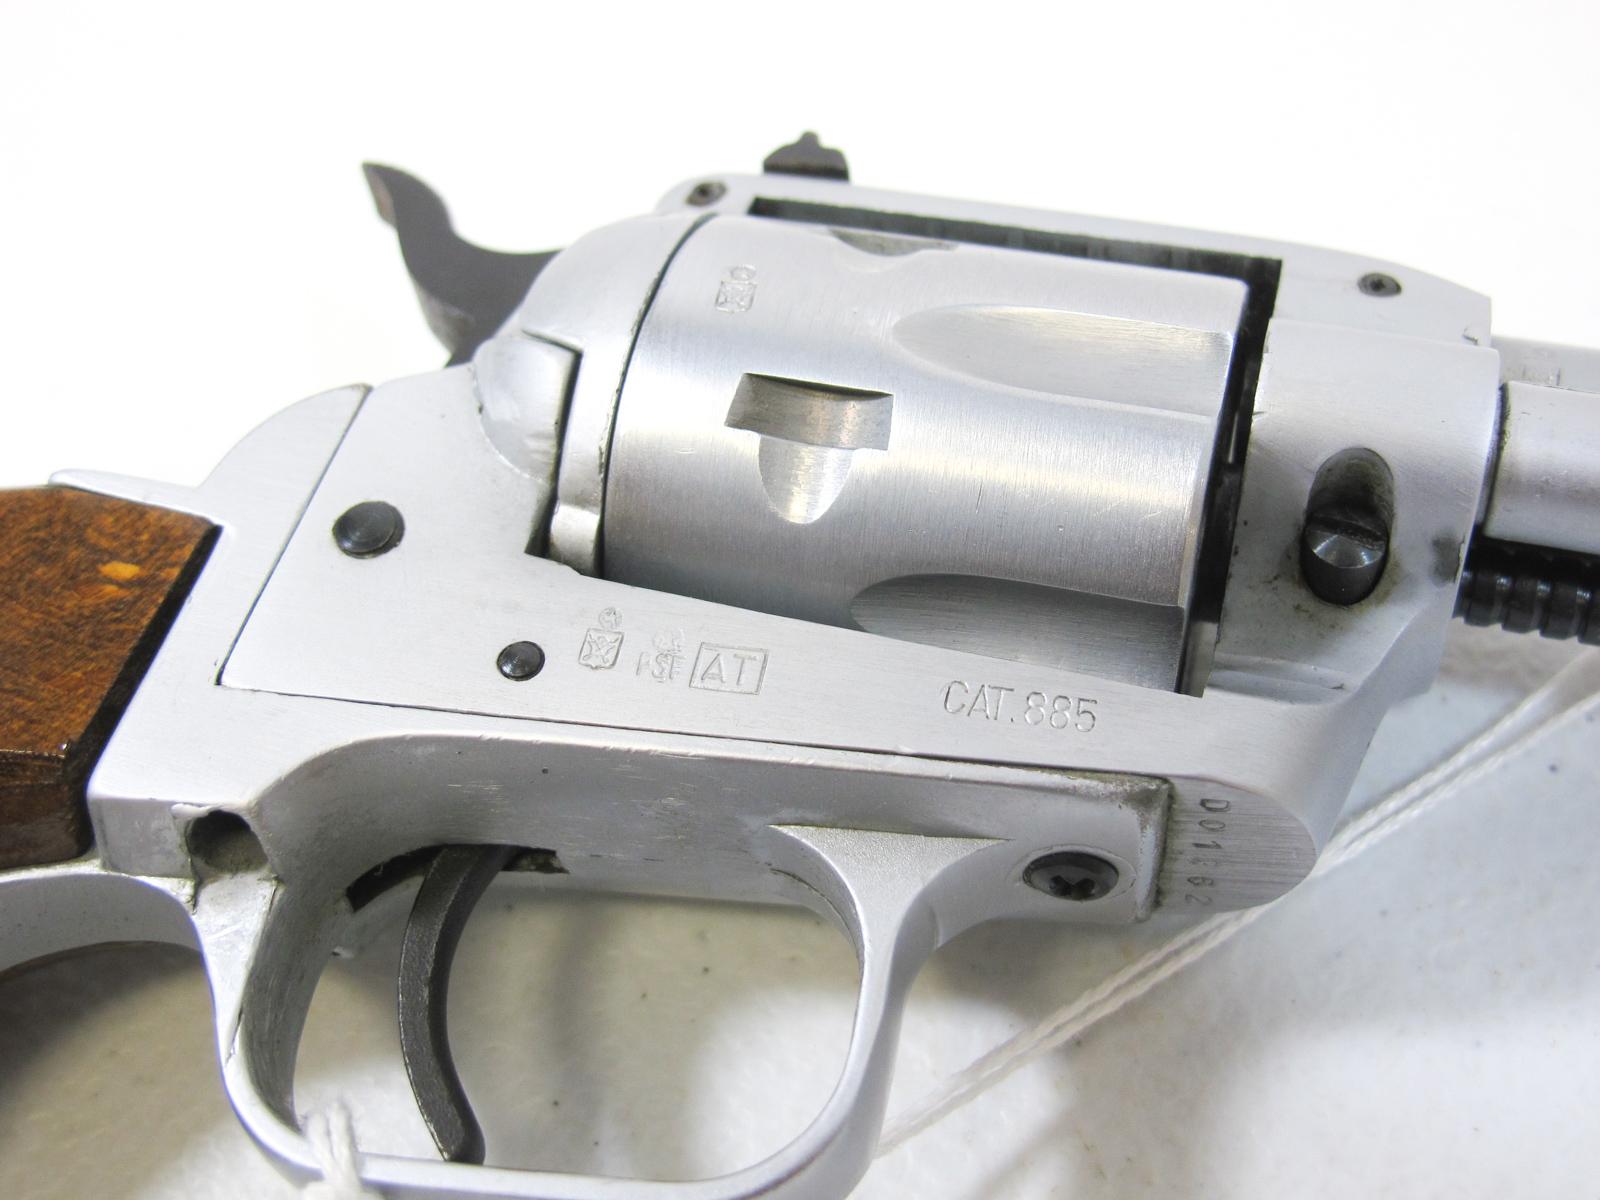 Armi F.LLI Tanfoglio Model TA76 Revolver